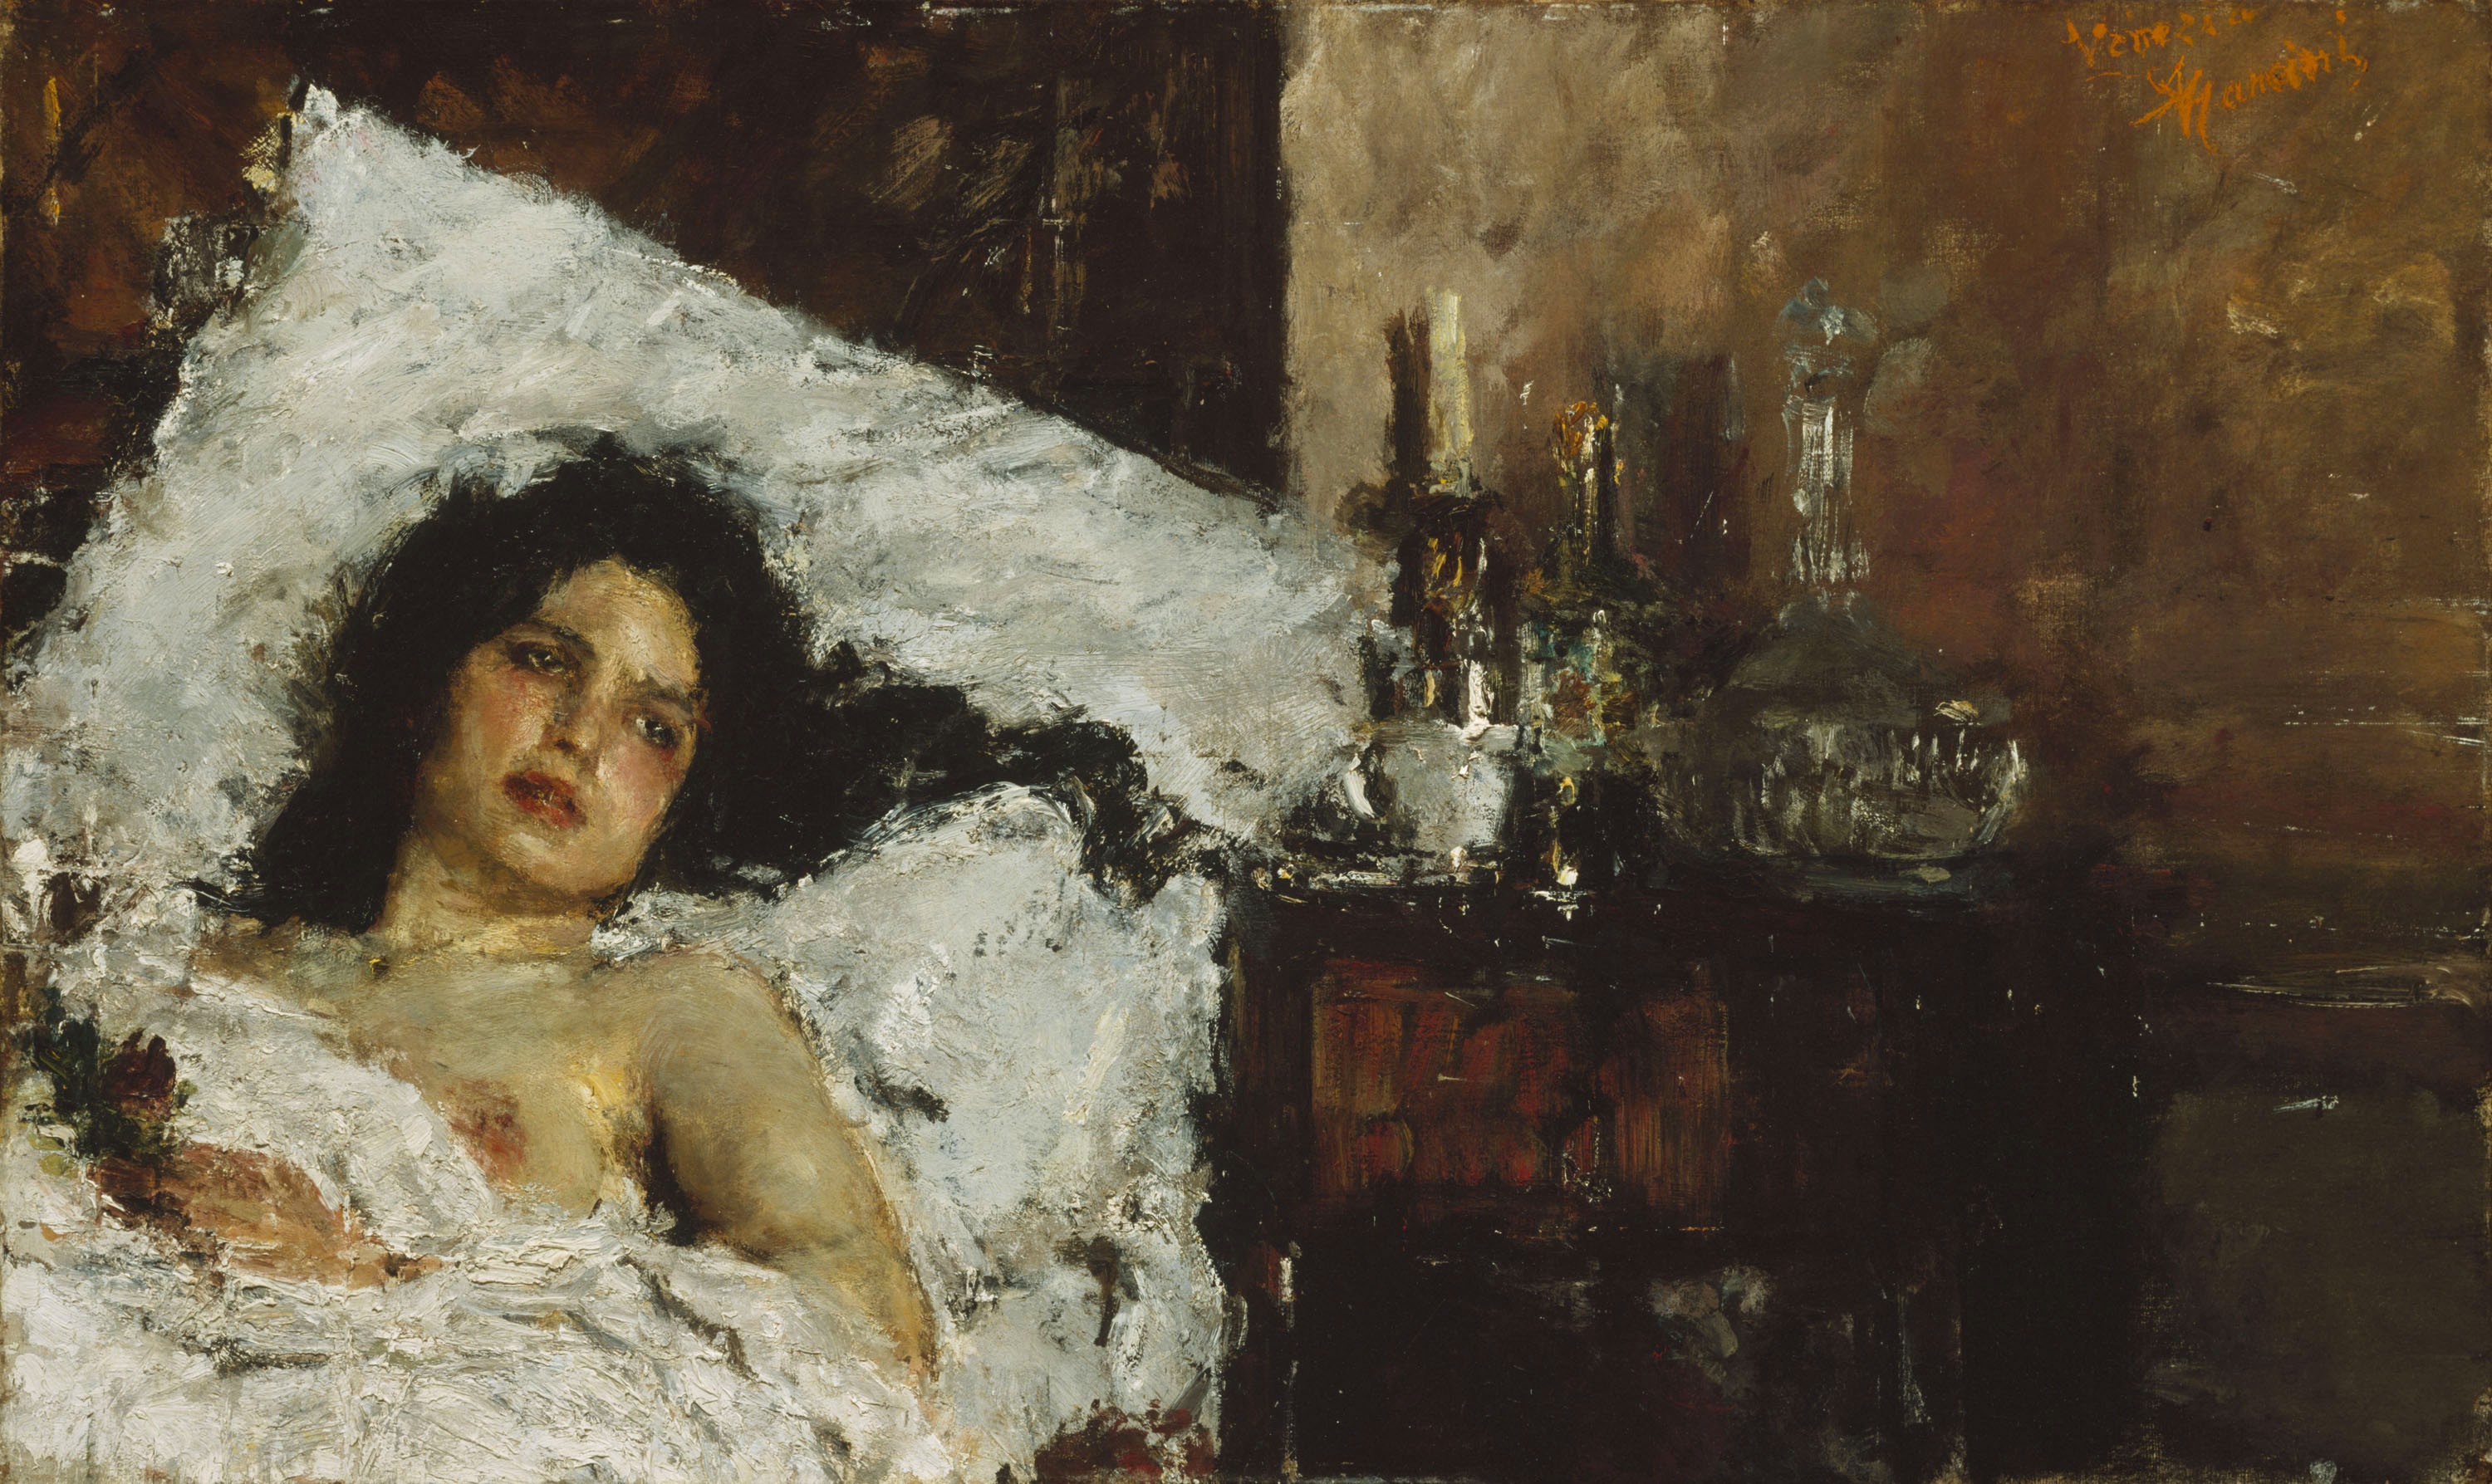 A pihenő by Antonio Mancini - 1887 - 60.9 x 100 cm 